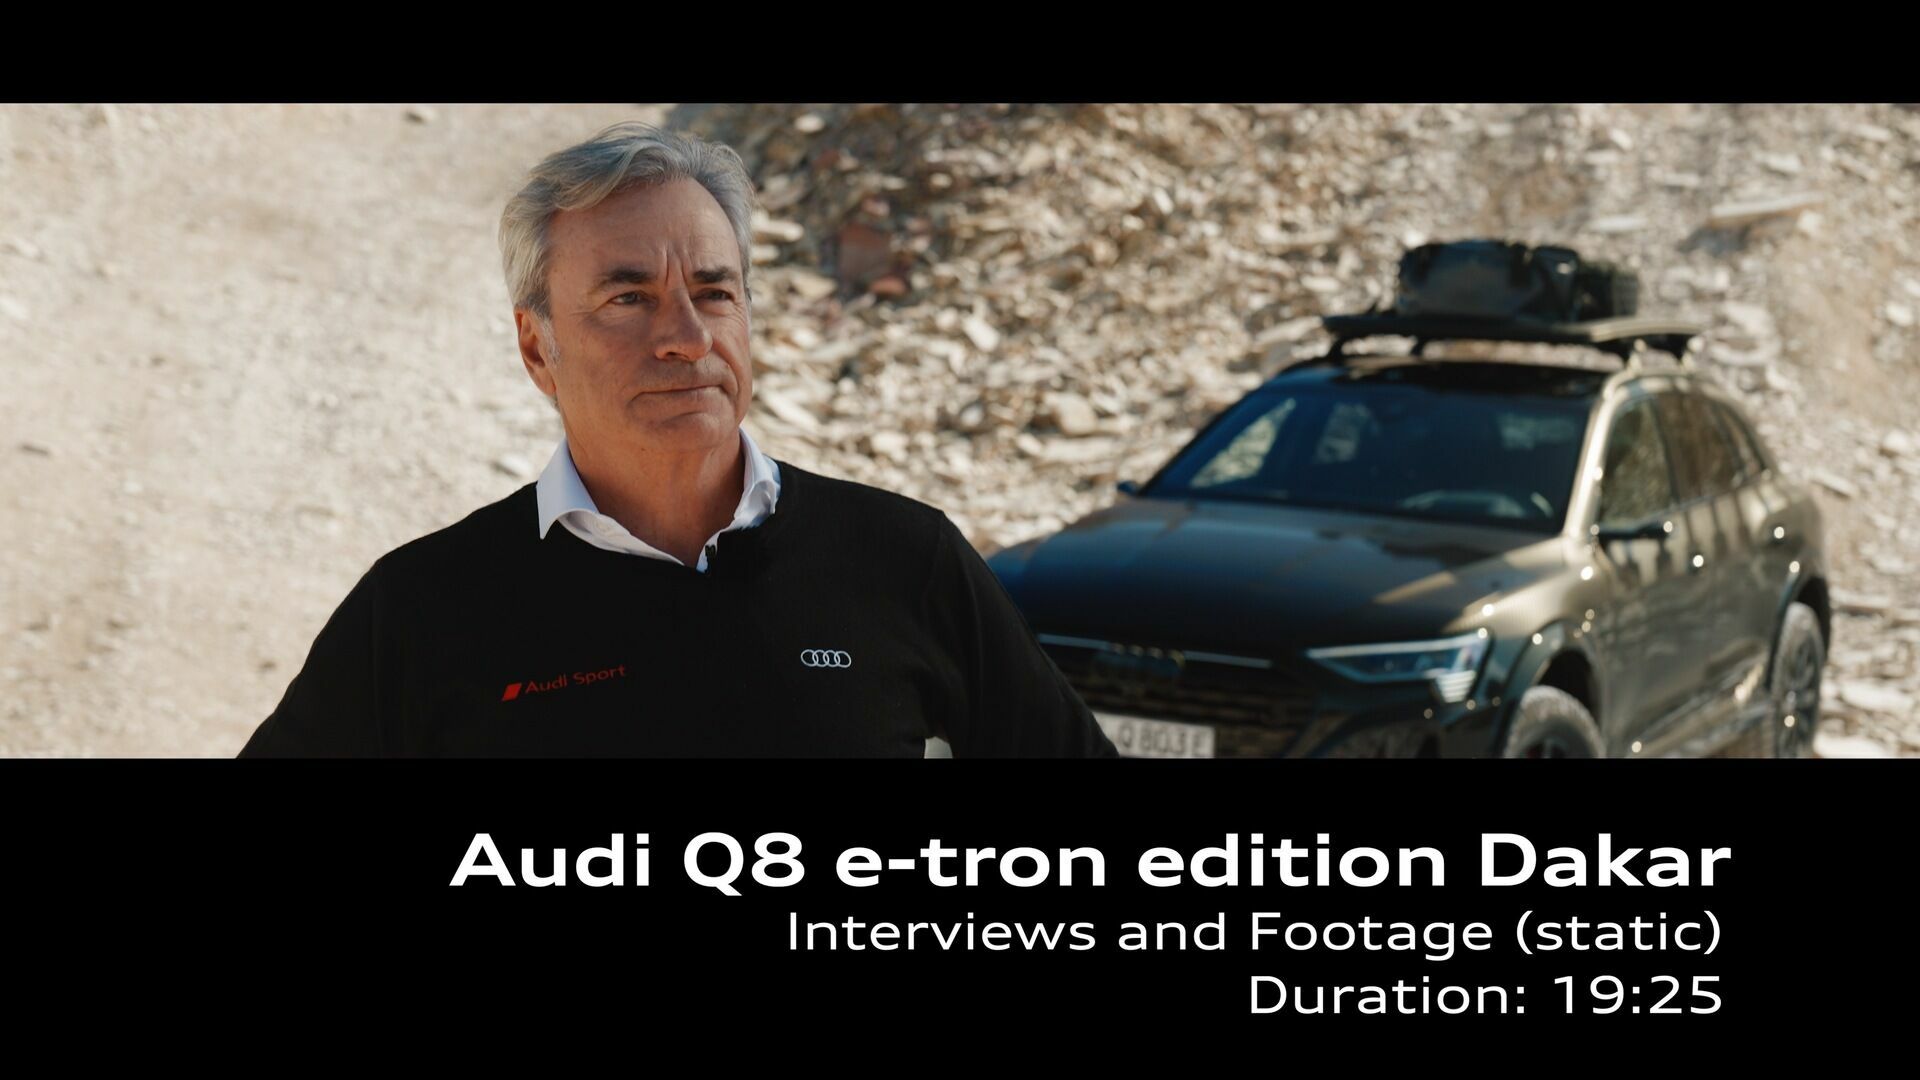 Statements von Carlos Sainz und Fermín Soneira Santos zum Audi Q8 e-tron edition Dakar – Footage